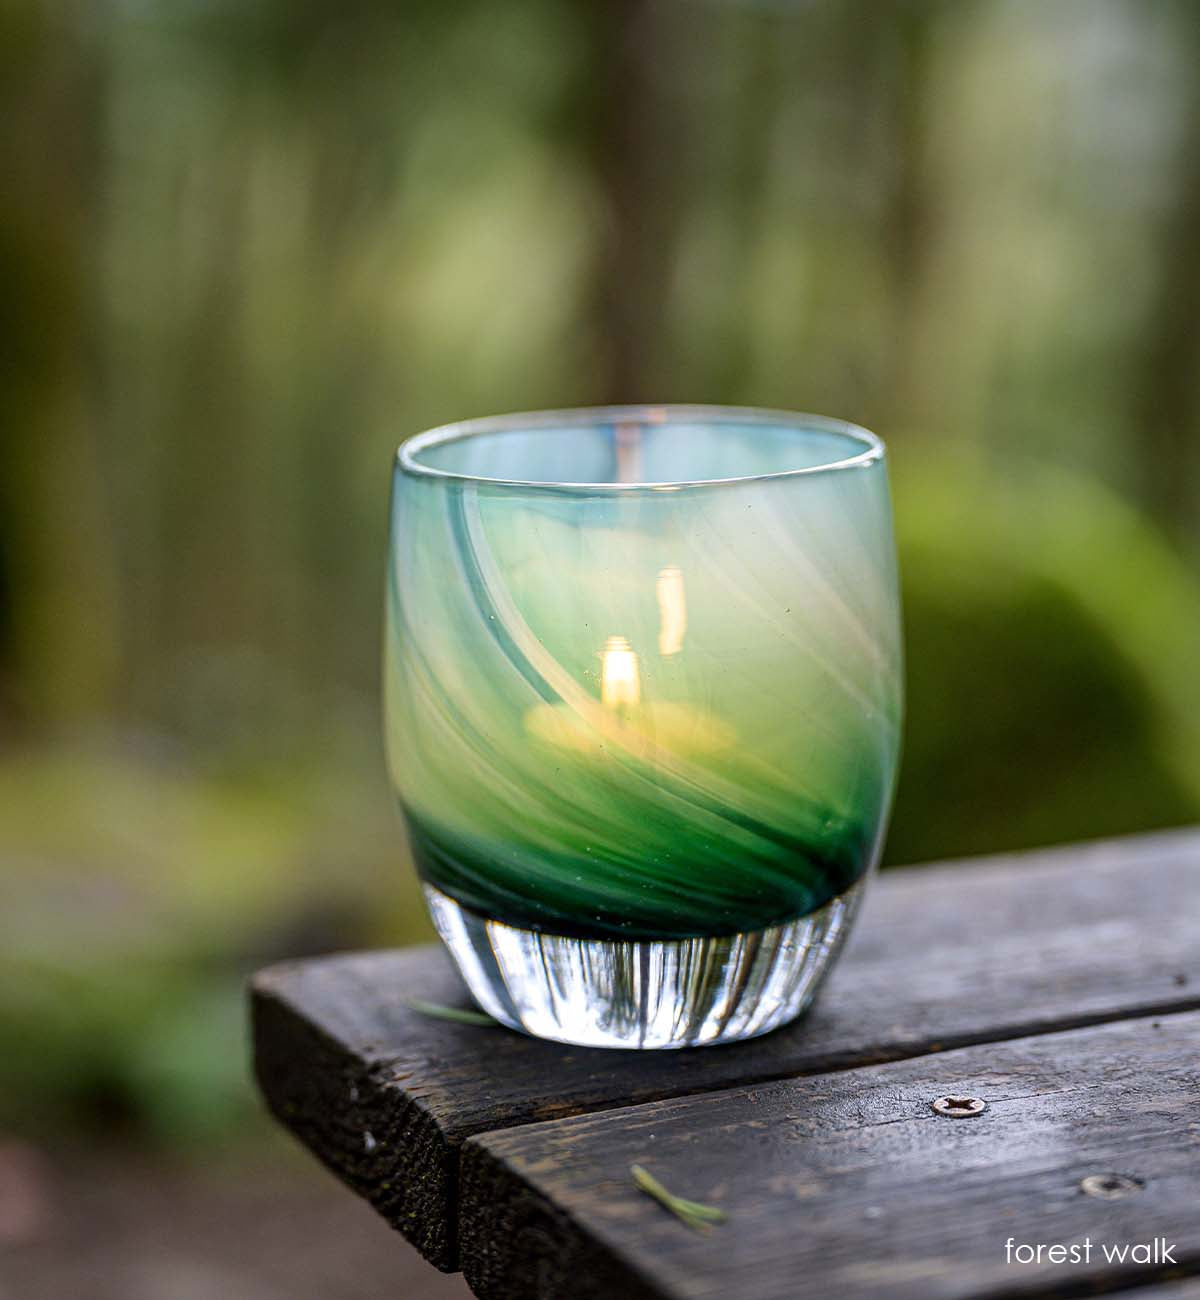 forest walk, translucent green swirl hand-blown glass votive candle holder.